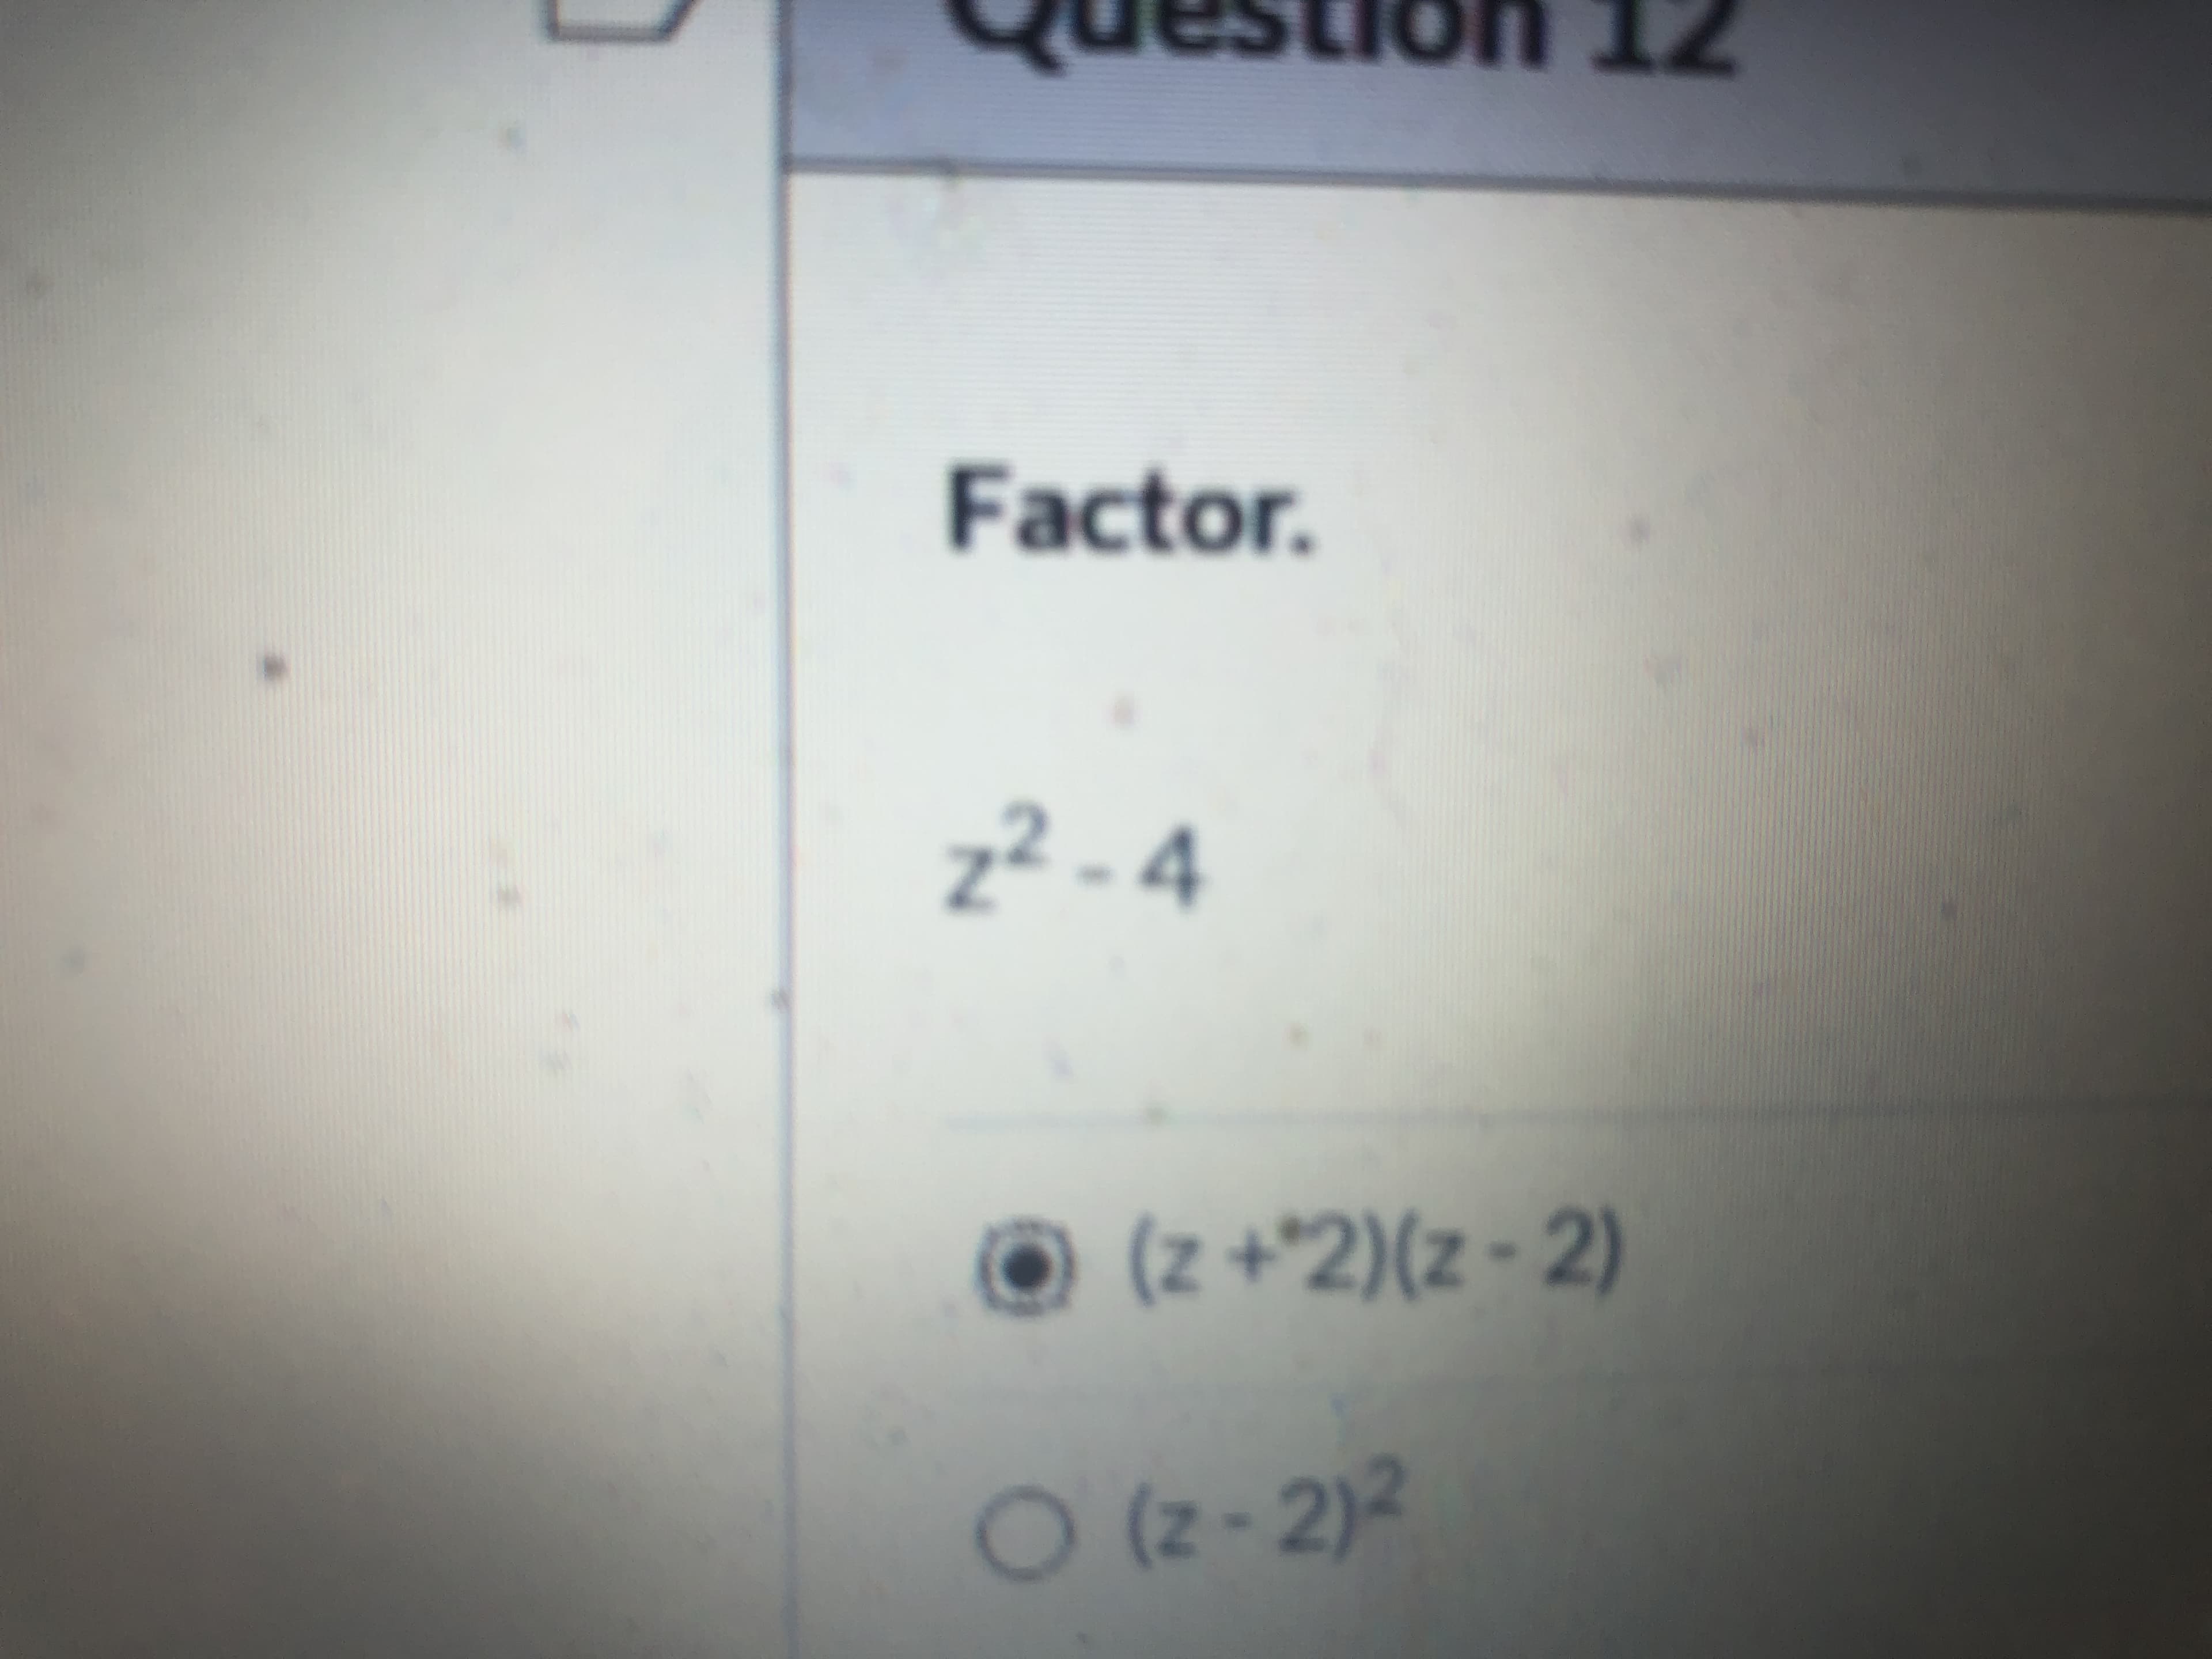 Factor.
z² - 4
© (z +^2)(z - 2)
O (2- 2)2
